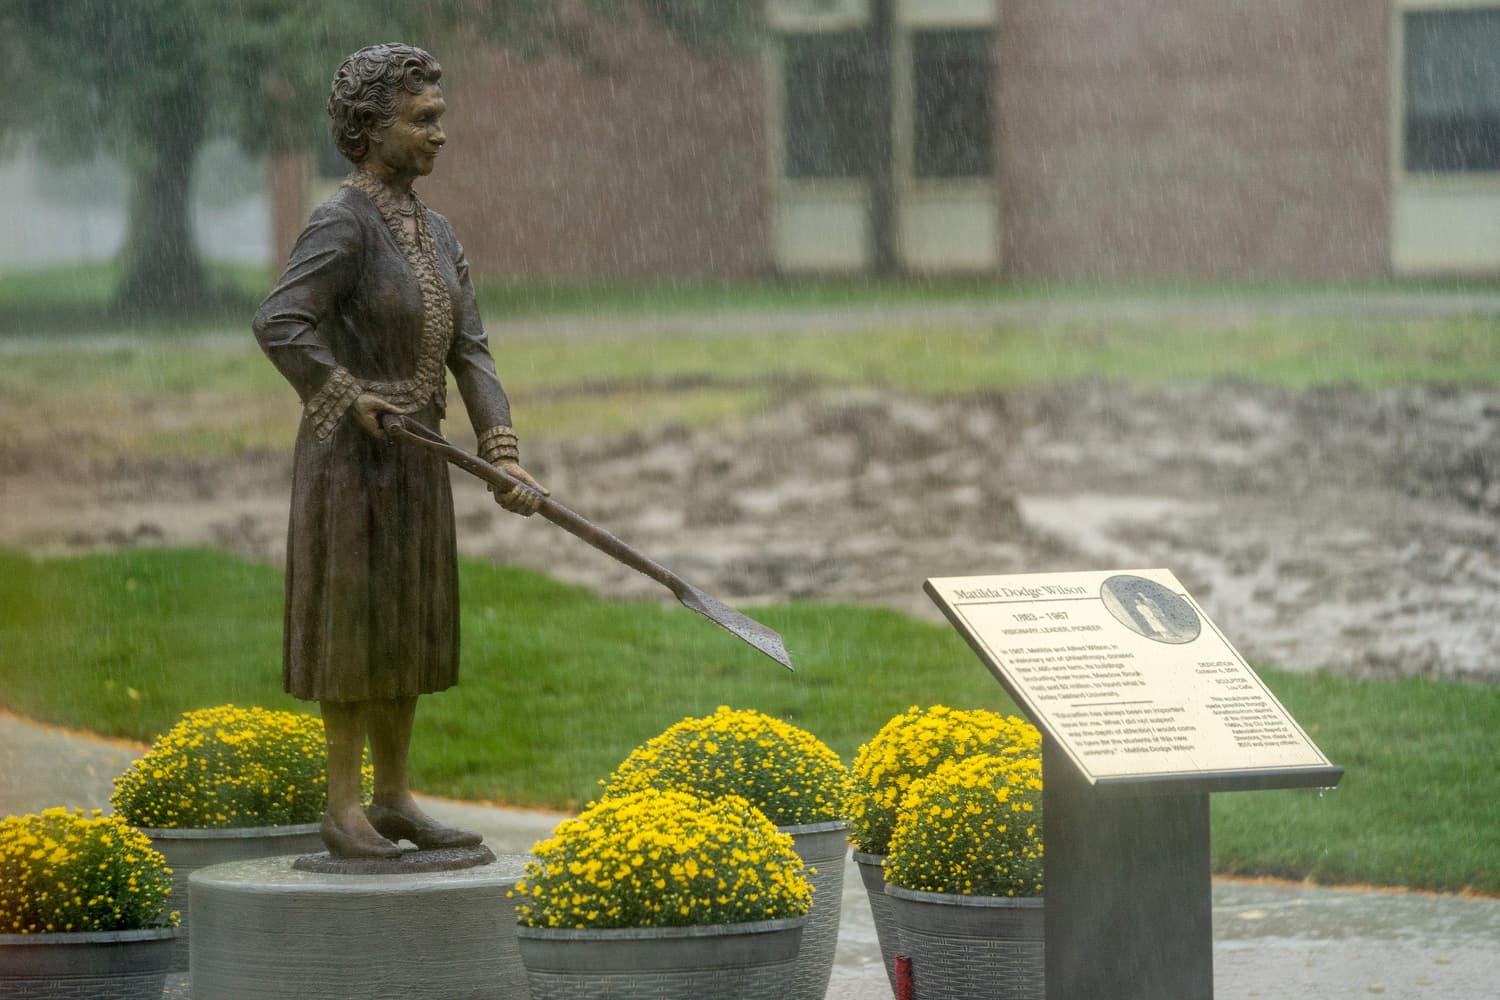  Matilda Wilson statue in the rain 